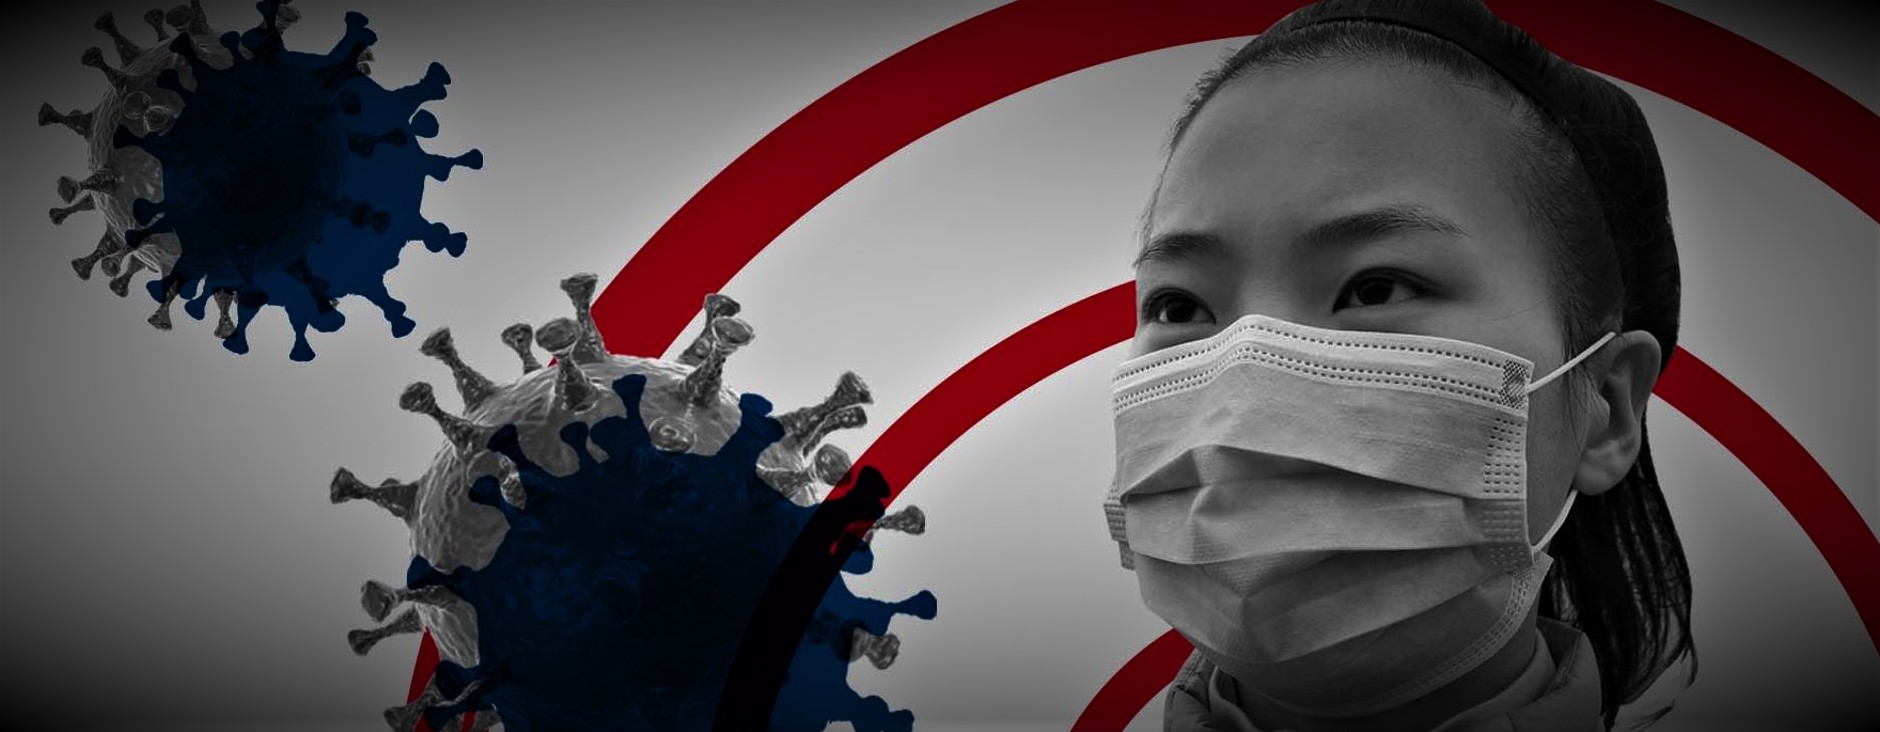 Πανεπιστήμιο Αμβούργου: «Ο ιός SARS-CoV-2 κατασκευάστηκε σε κινεζικό εργαστήριο και διέφυγε σε ατύχημα»